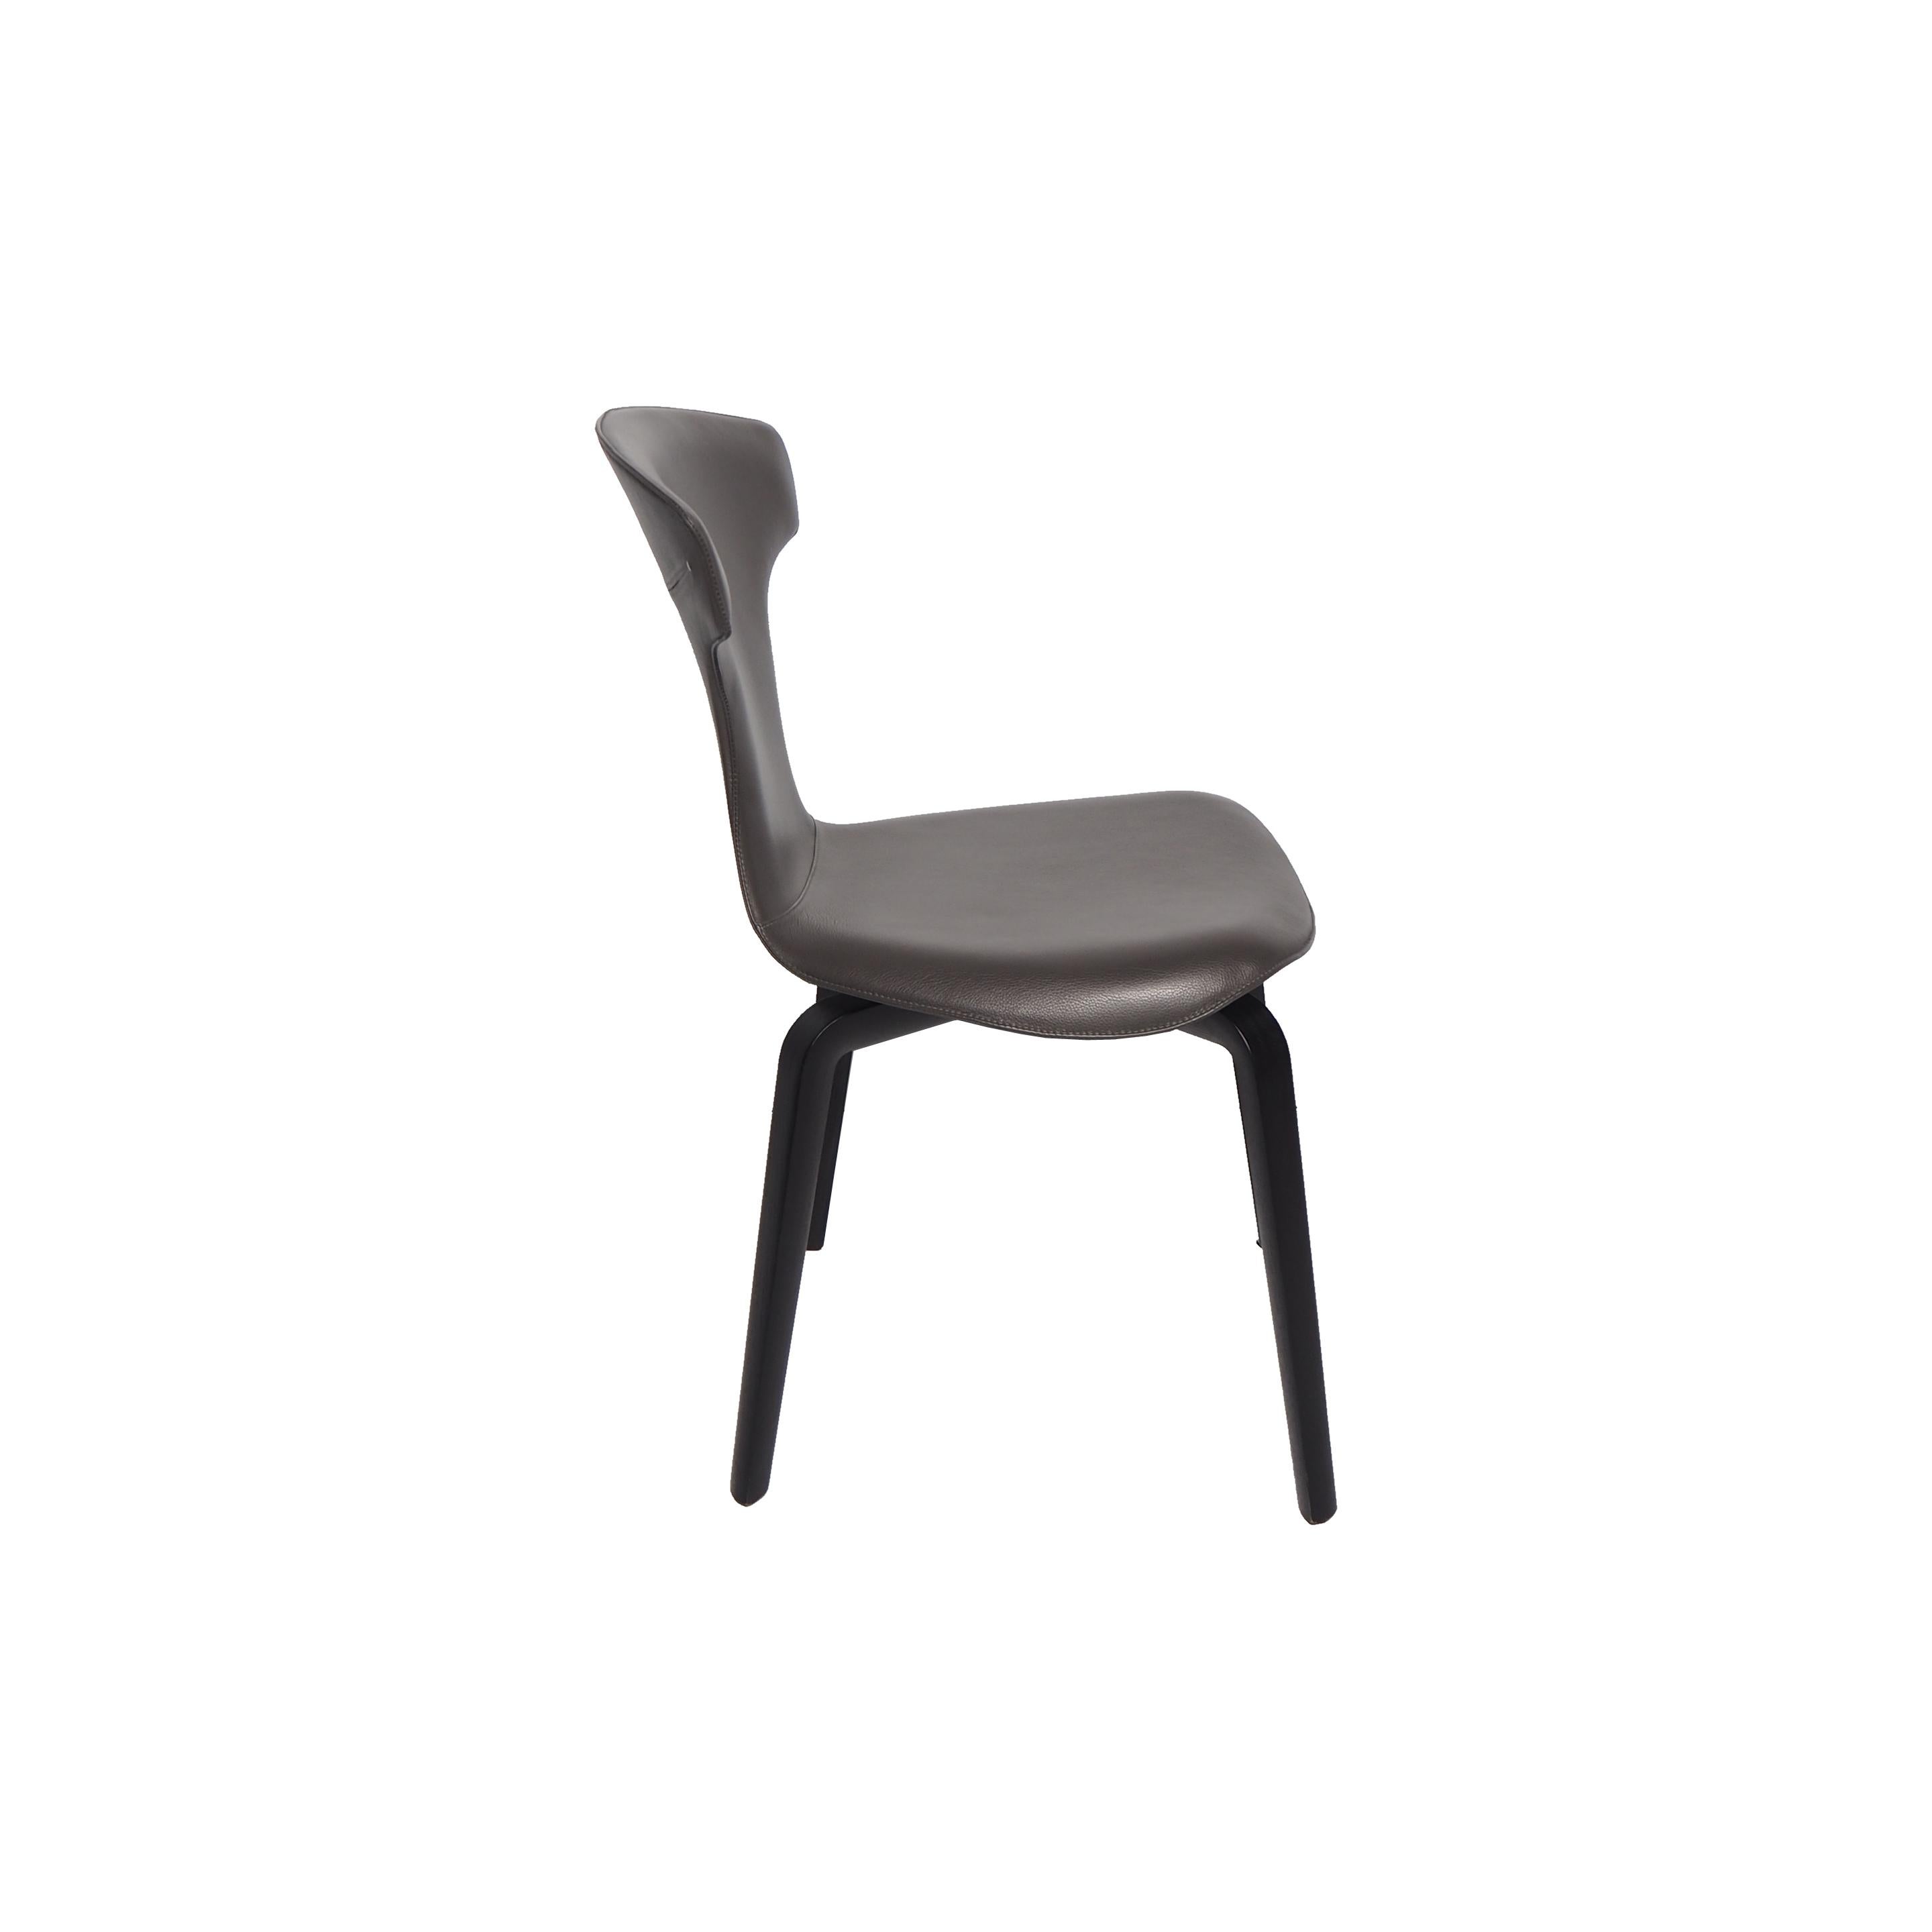 La chaise Montera conçue par Roberto Lazzeroni pour Poltrona Frau a une légèreté formelle qui exprime le charme sensoriel de ses matériaux. Dans la série Montera, la coque est produite à partir de contreplaqué de hêtre moulé, courbé à la vapeur et